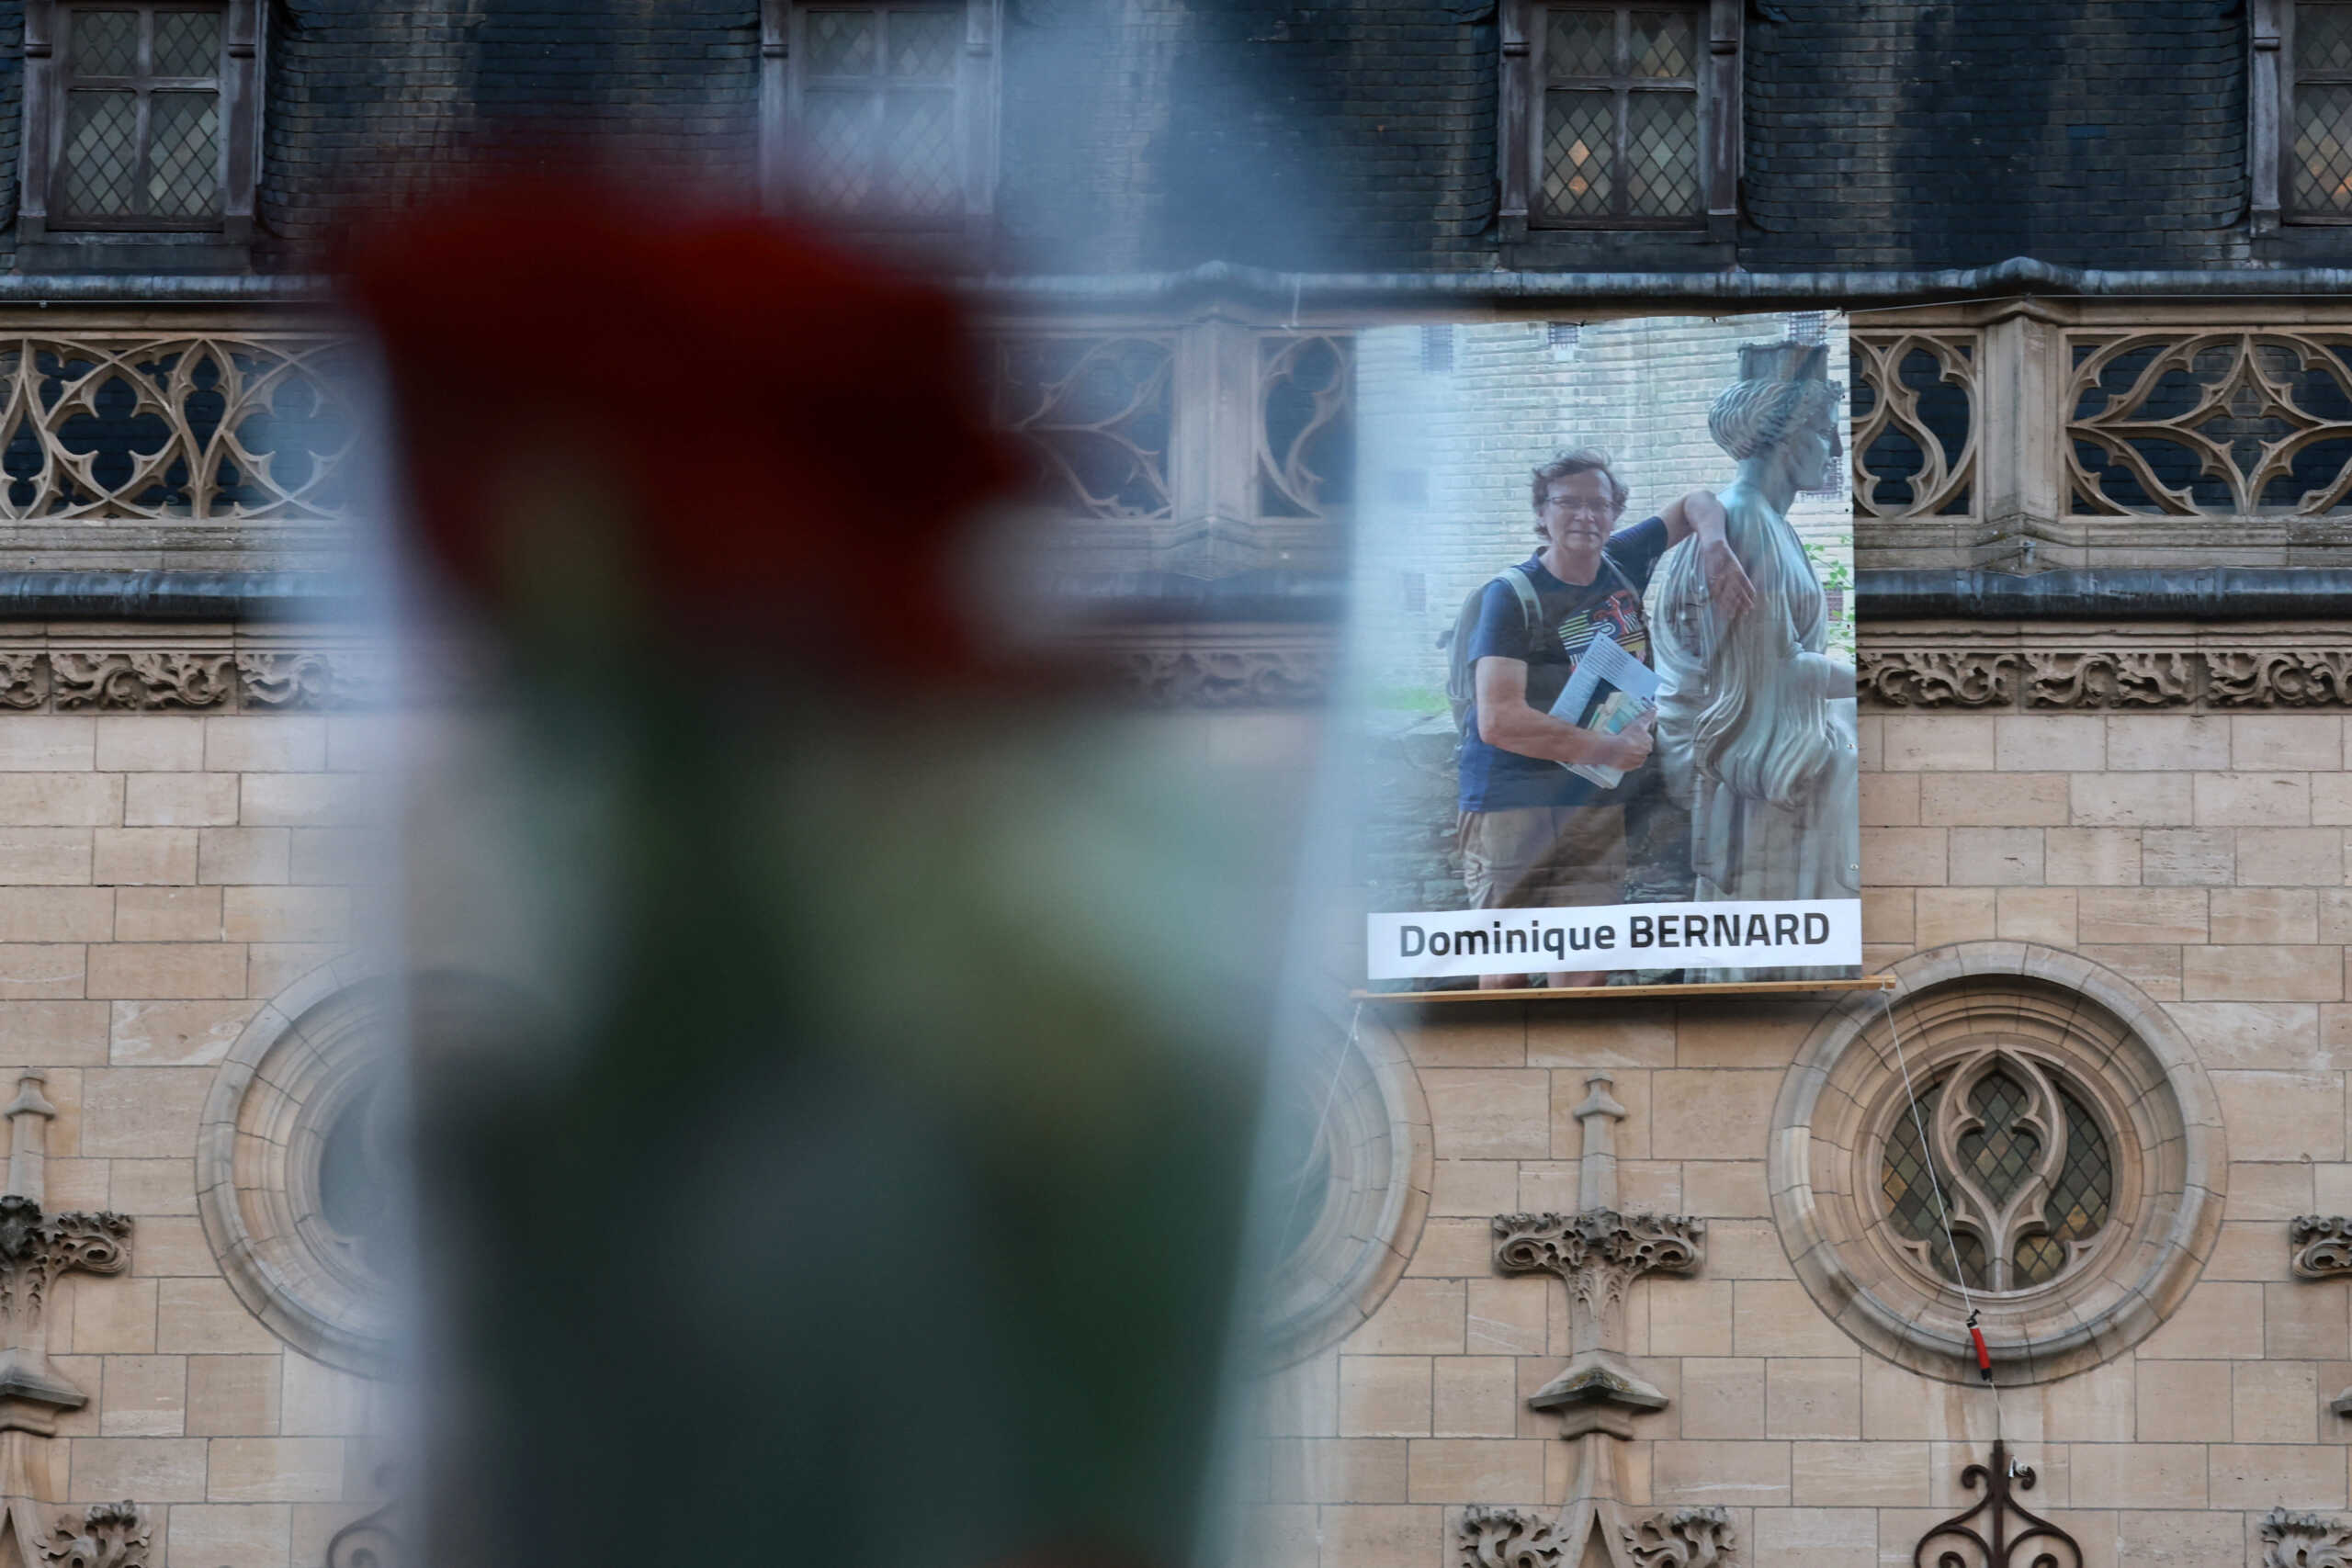 Γαλλία: Κηδεύτηκε μέσα σε κλίμα συγκίνησης ο καθηγητής που δολοφονήθηκε στην Αράς